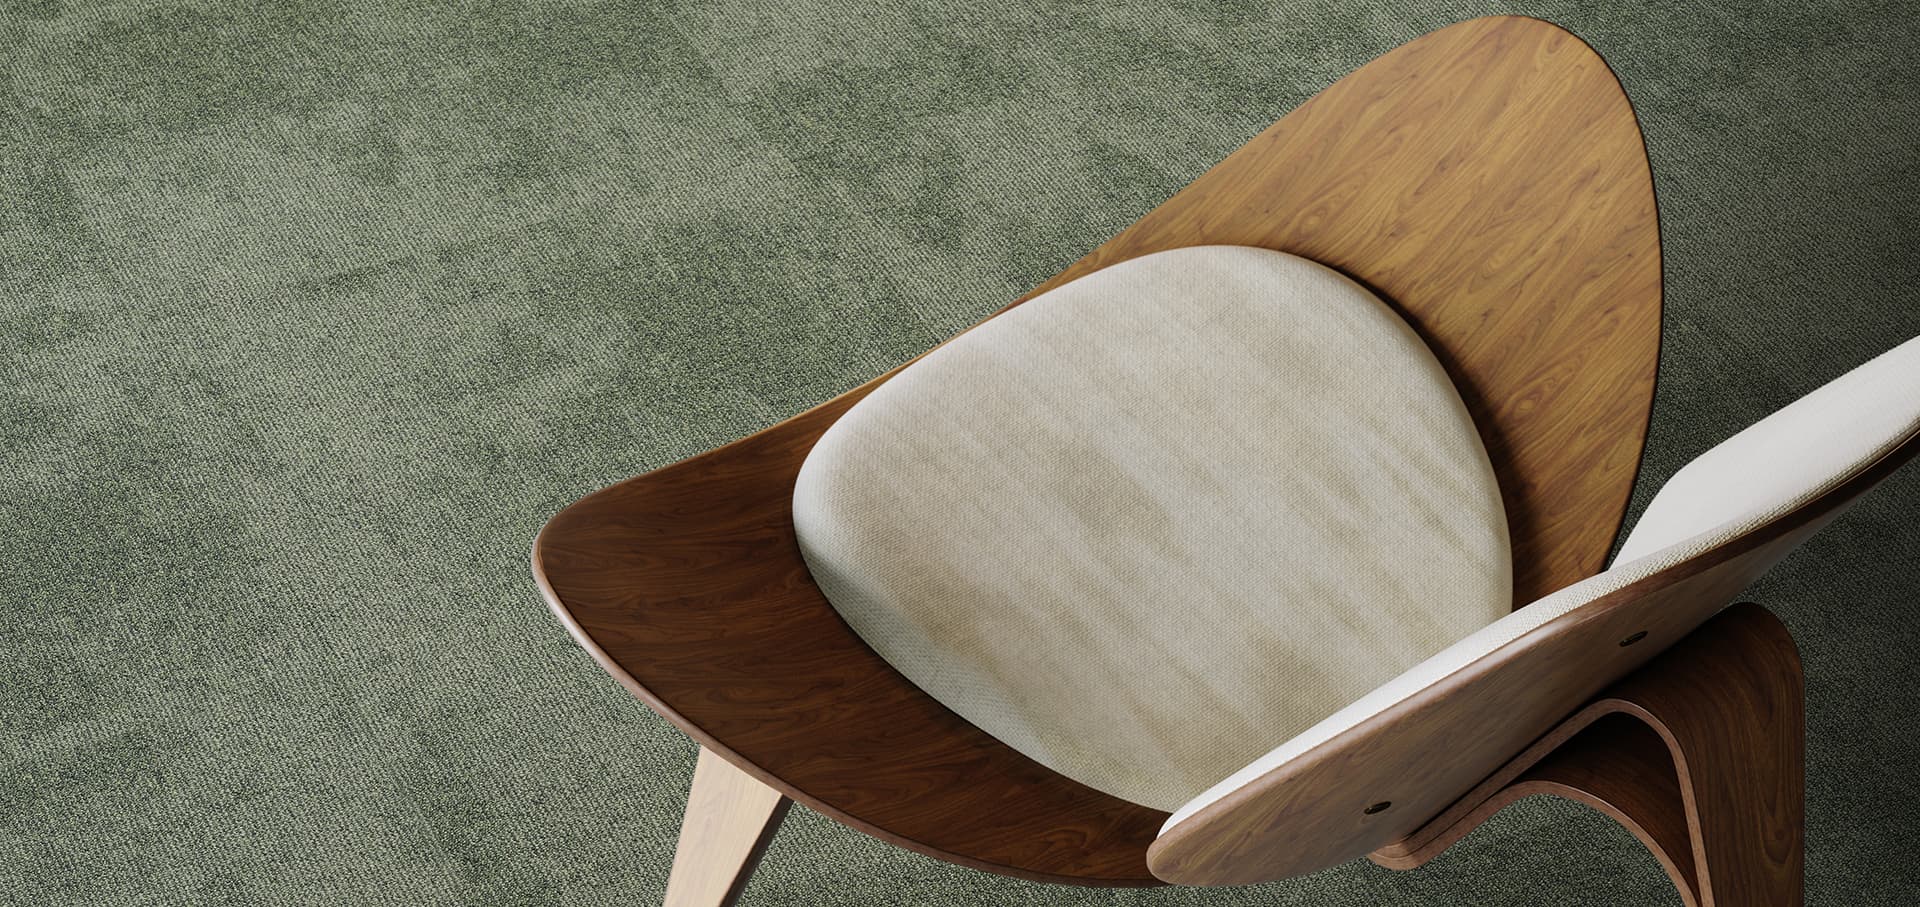 Dalles de moquette avec une chaise design